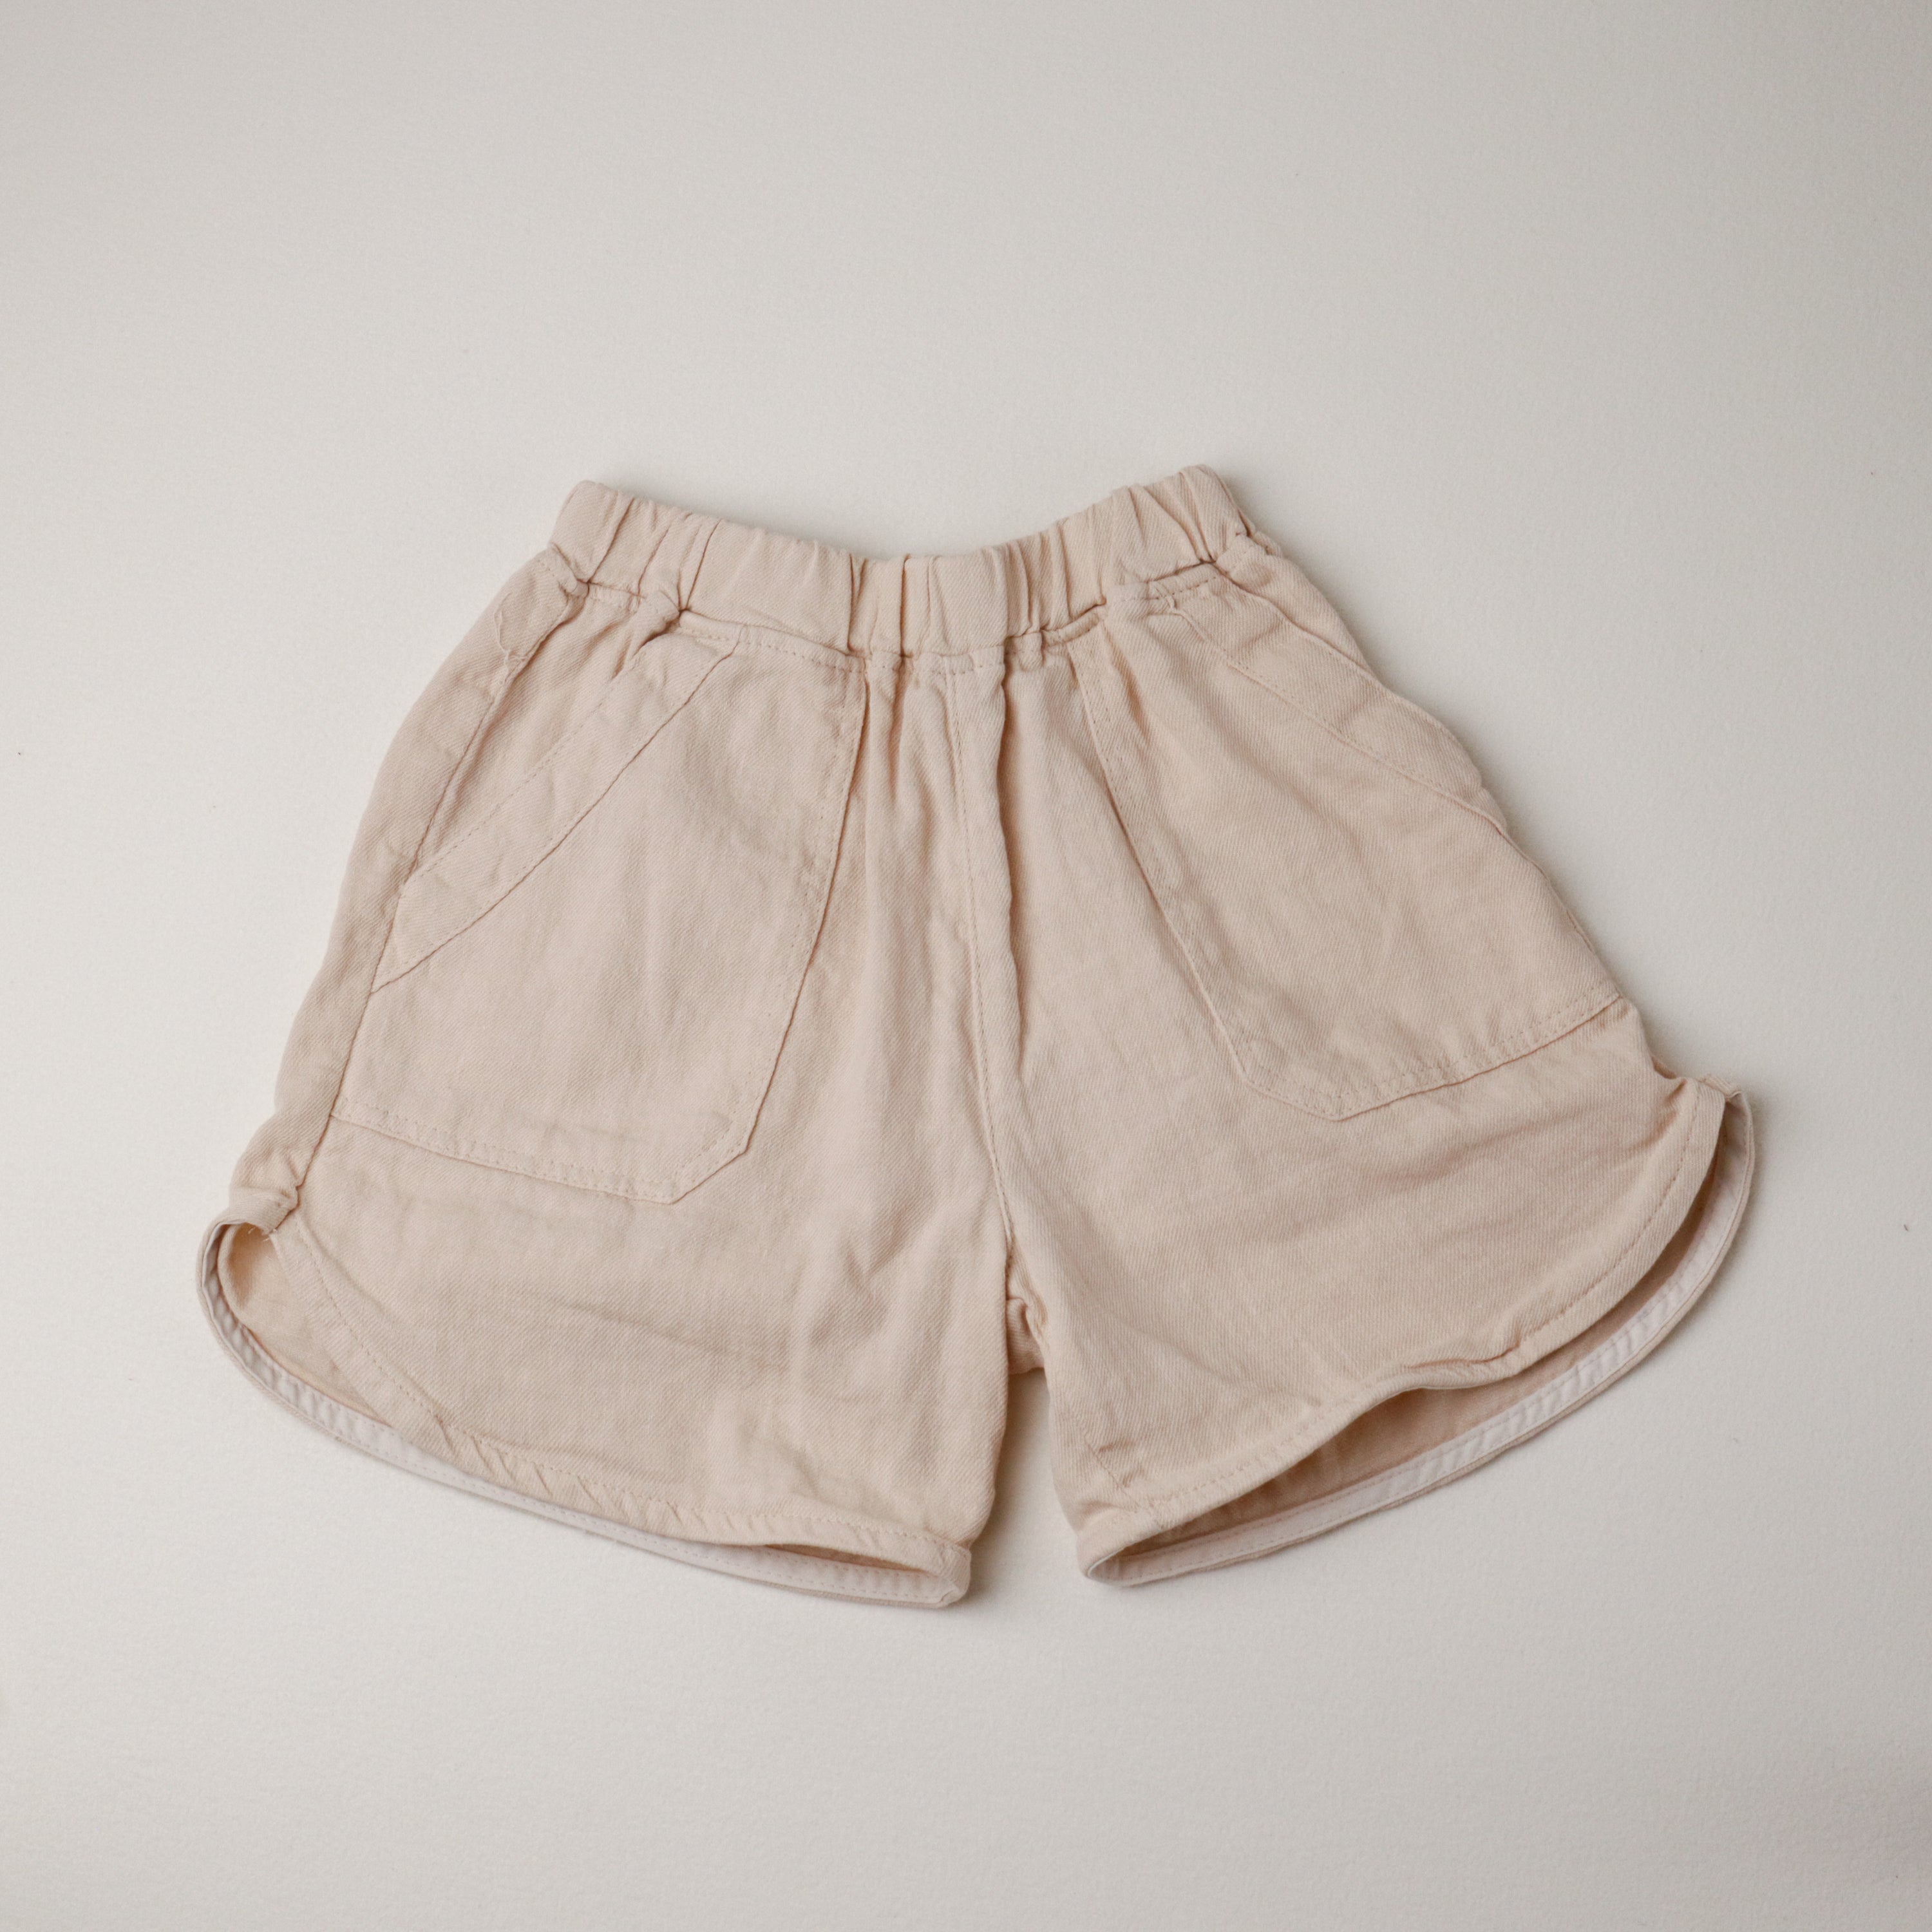 Anggo Shorts (Ready Stock )